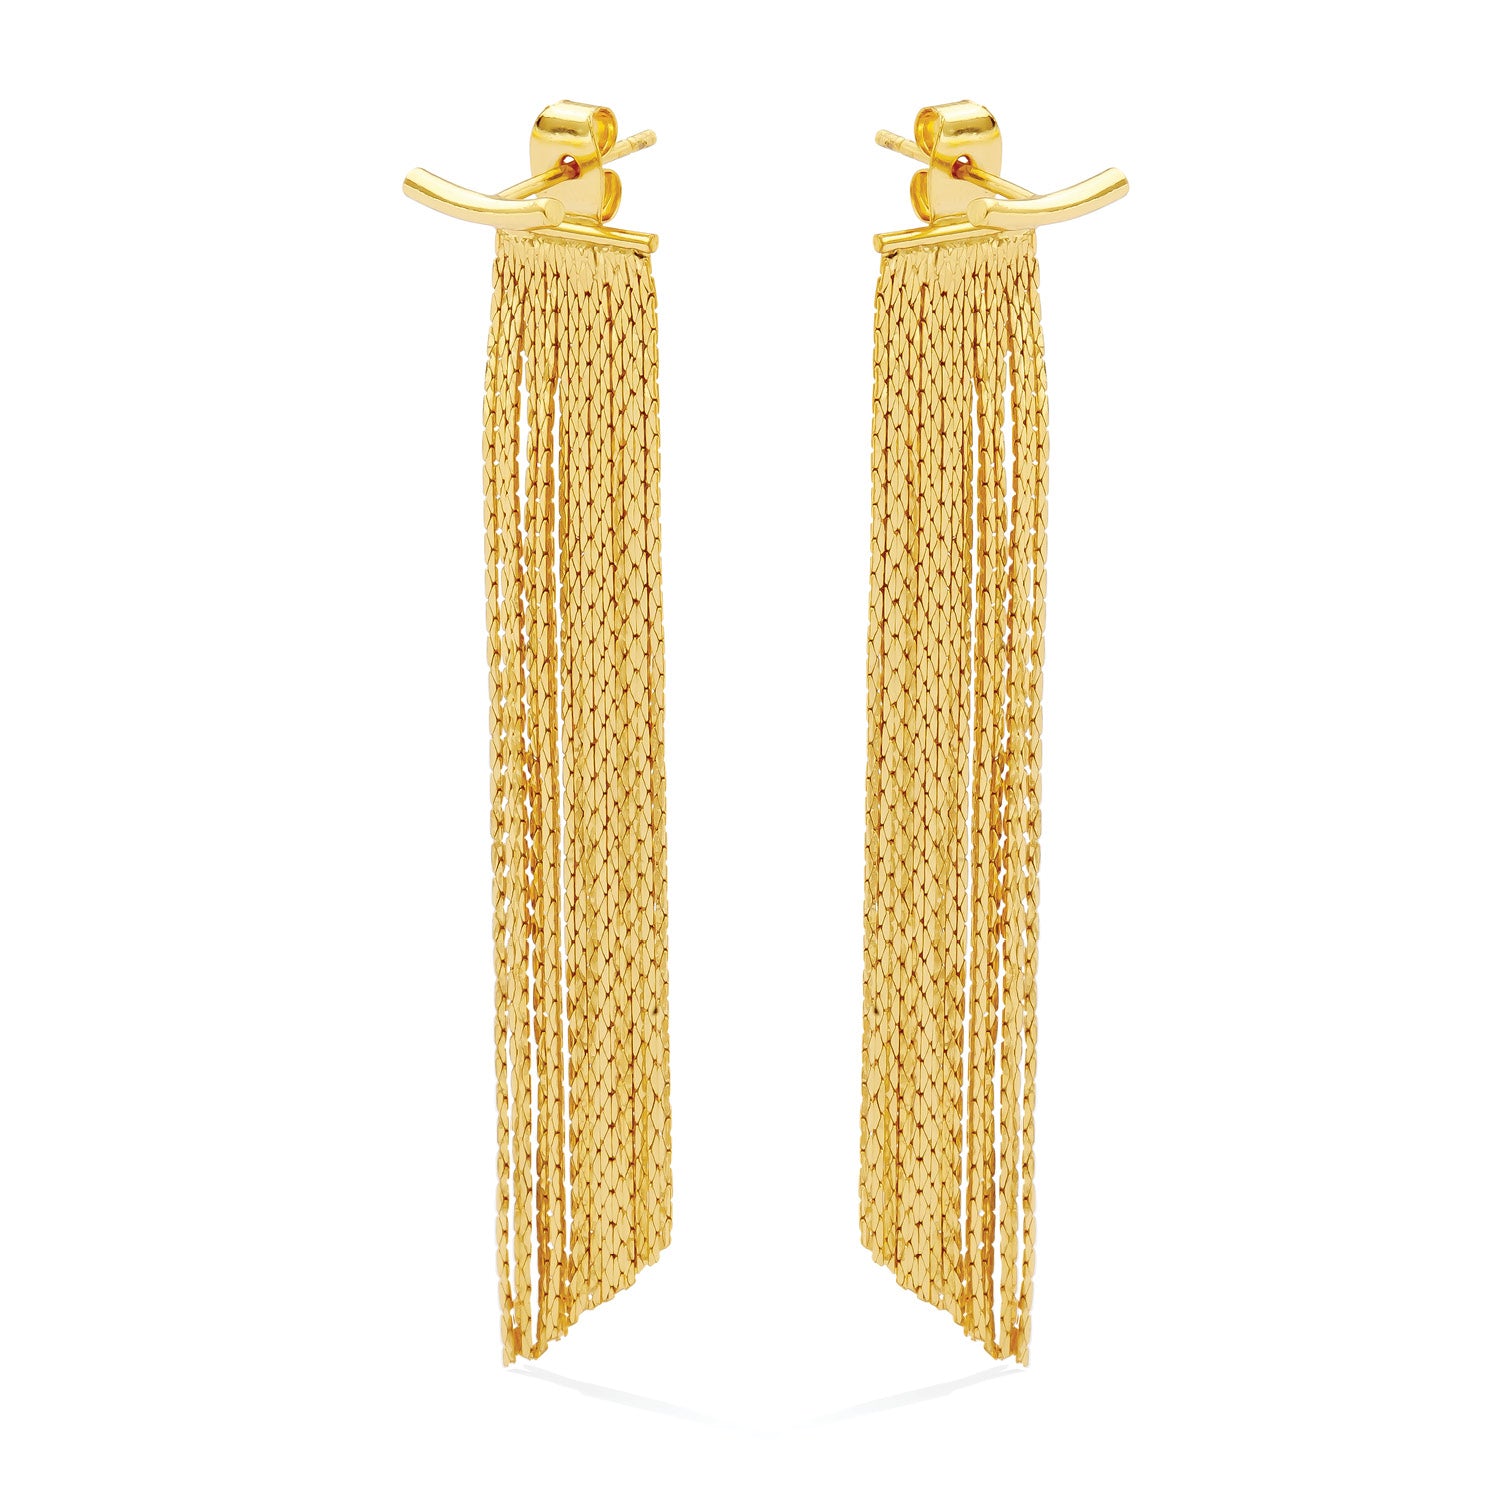 Gold Long Earrings for Women Gold Tassel Earrings Cool Dangle Geometric Bar Drop  Earring for Teen Girls,Statement Fringe Chain Dangle Hoop Earrings